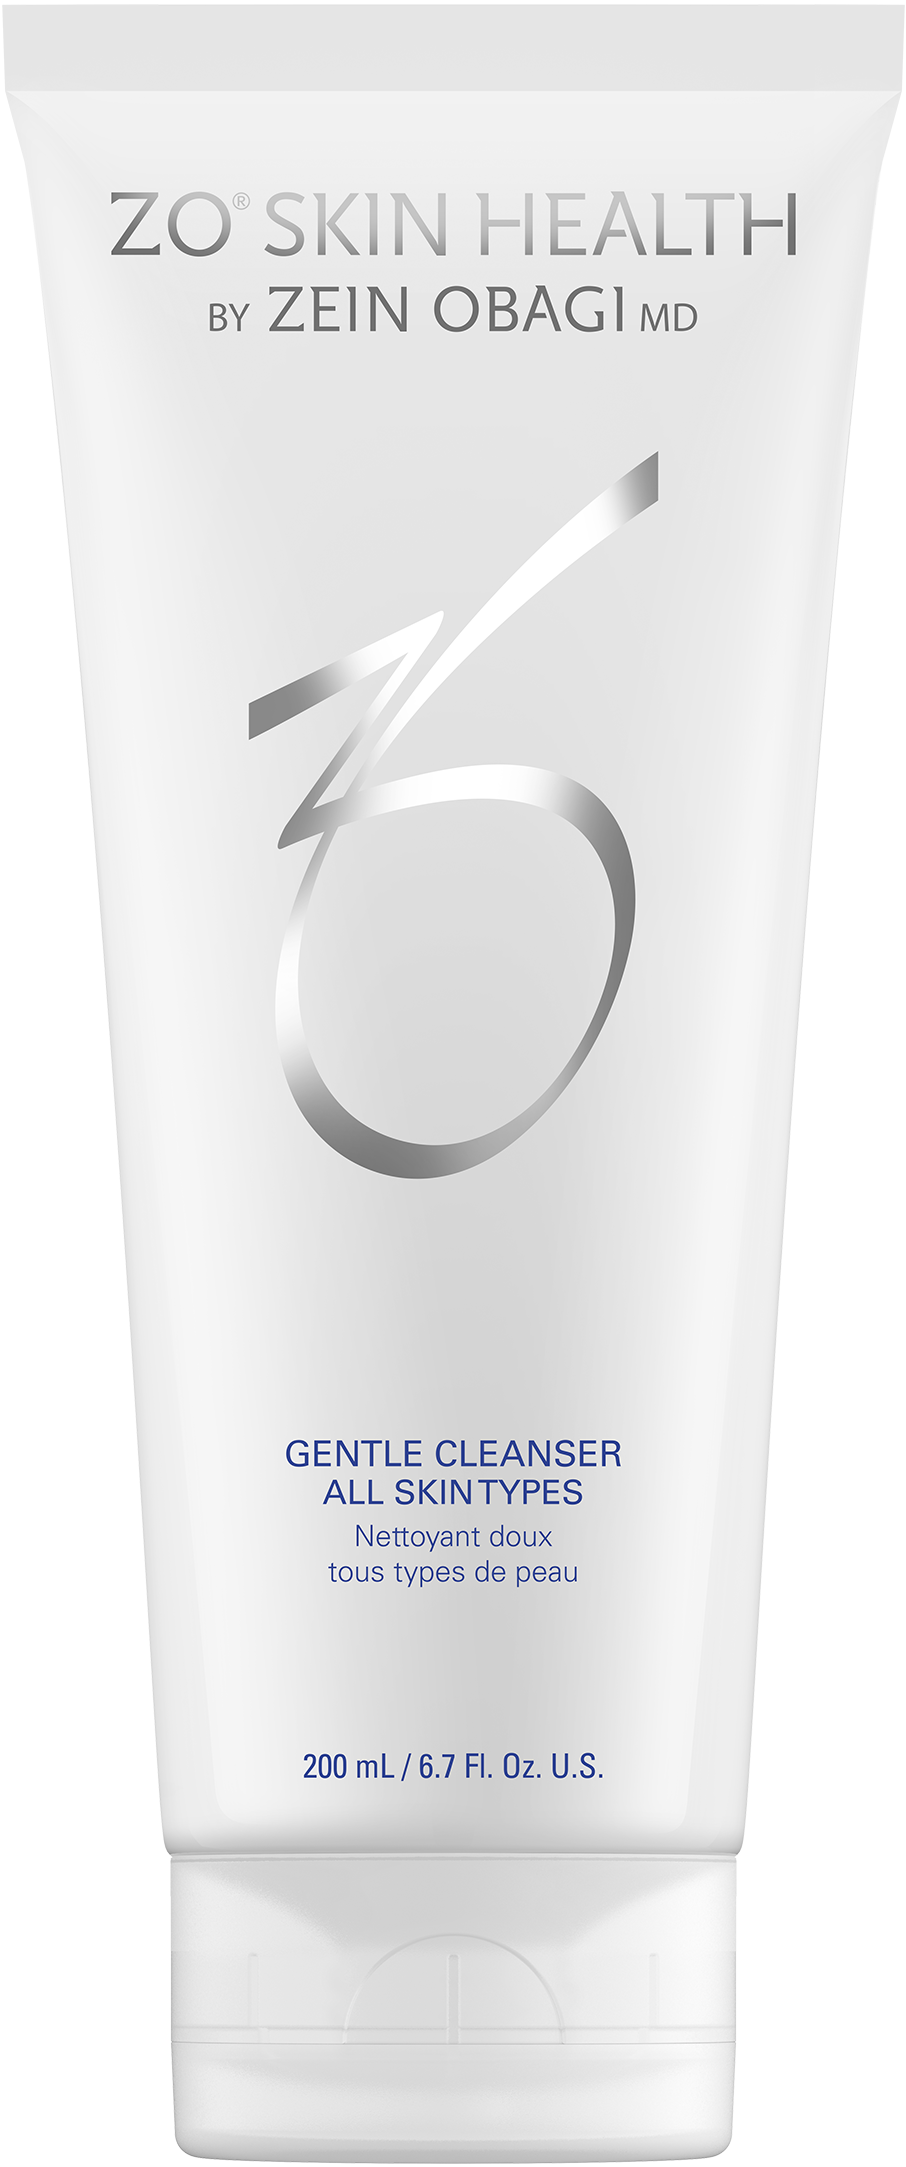 Gentle Cleanser - Avebelle Skin